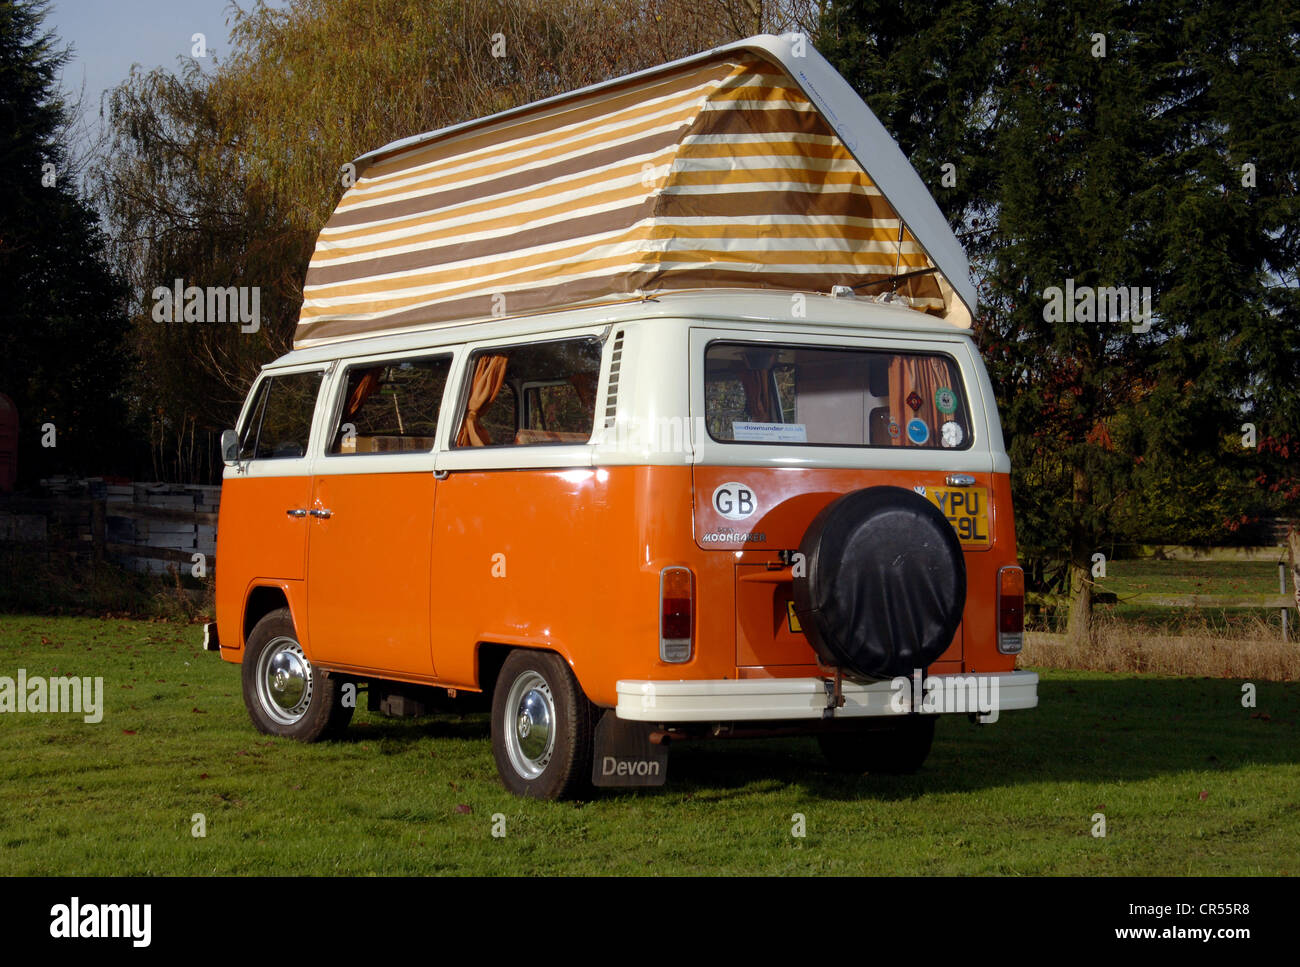 Bay WIndow VW Volkswagen camper van 